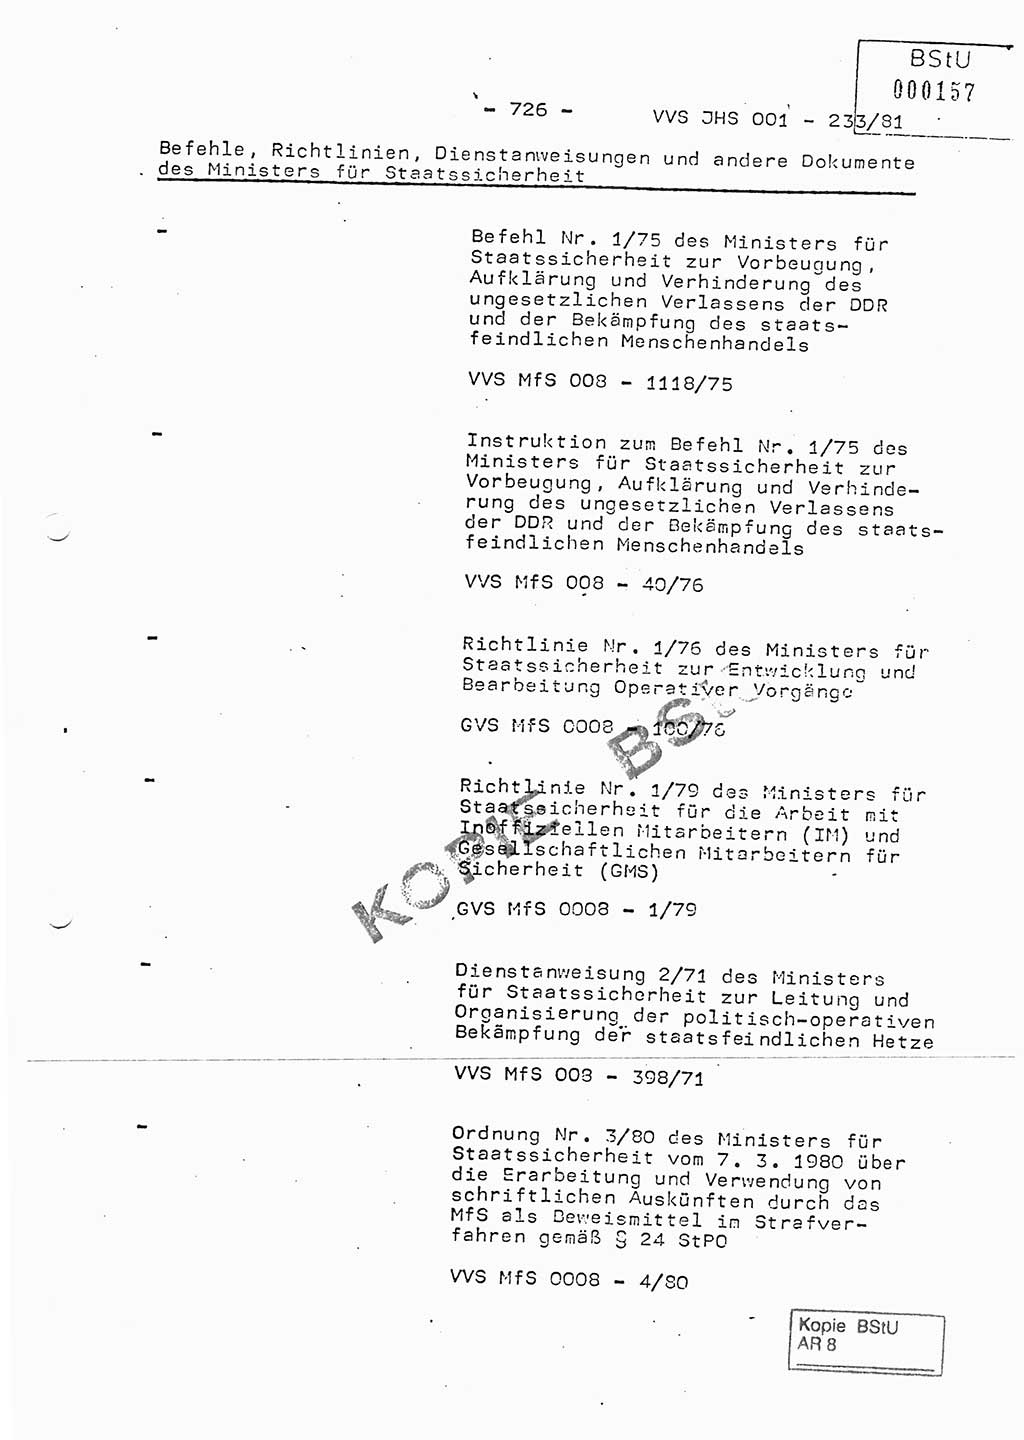 Dissertation Oberstleutnant Horst Zank (JHS), Oberstleutnant Dr. Karl-Heinz Knoblauch (JHS), Oberstleutnant Gustav-Adolf Kowalewski (HA Ⅸ), Oberstleutnant Wolfgang Plötner (HA Ⅸ), Ministerium für Staatssicherheit (MfS) [Deutsche Demokratische Republik (DDR)], Juristische Hochschule (JHS), Vertrauliche Verschlußsache (VVS) o001-233/81, Potsdam 1981, Blatt 726 (Diss. MfS DDR JHS VVS o001-233/81 1981, Bl. 726)